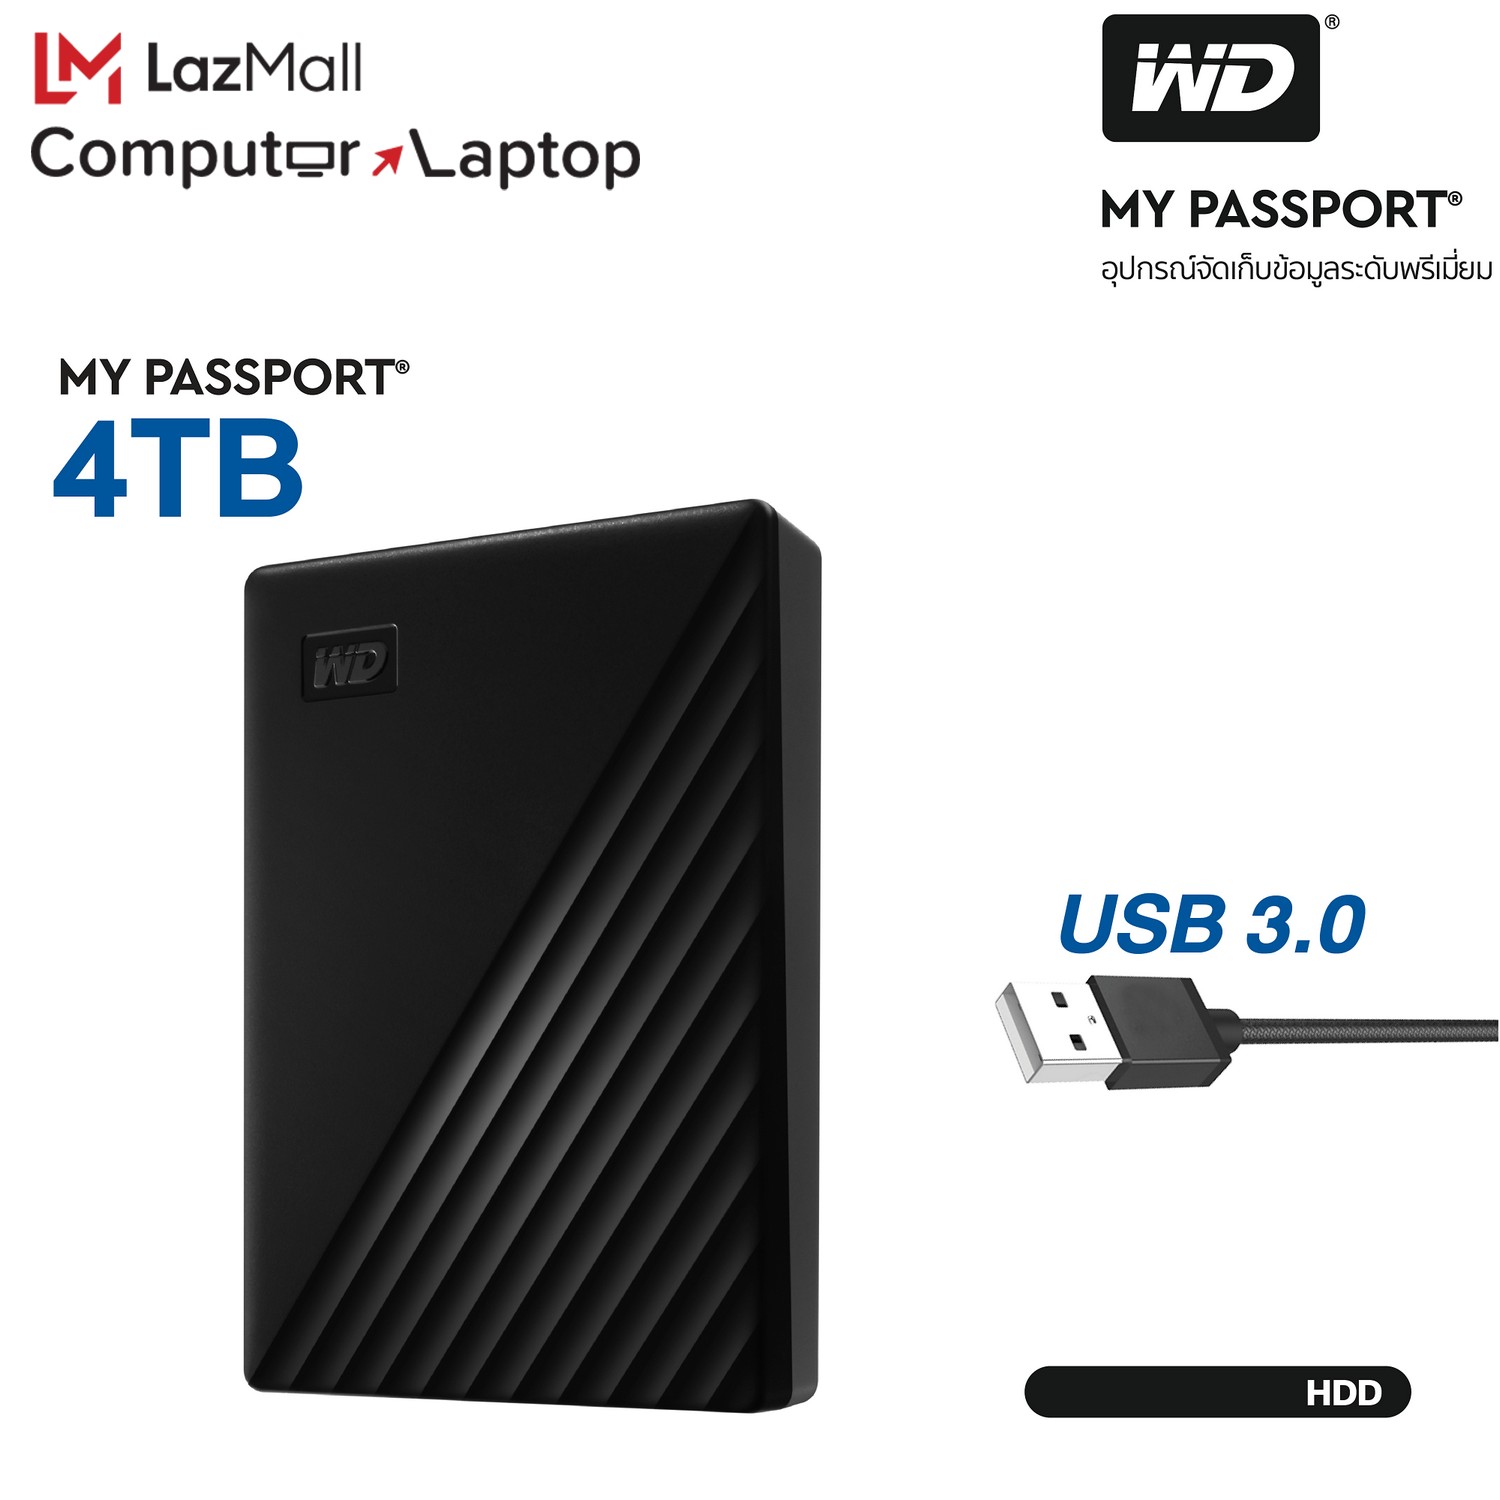 WD My Passport 4TB, Black, USB 3.0, HDD 2.5